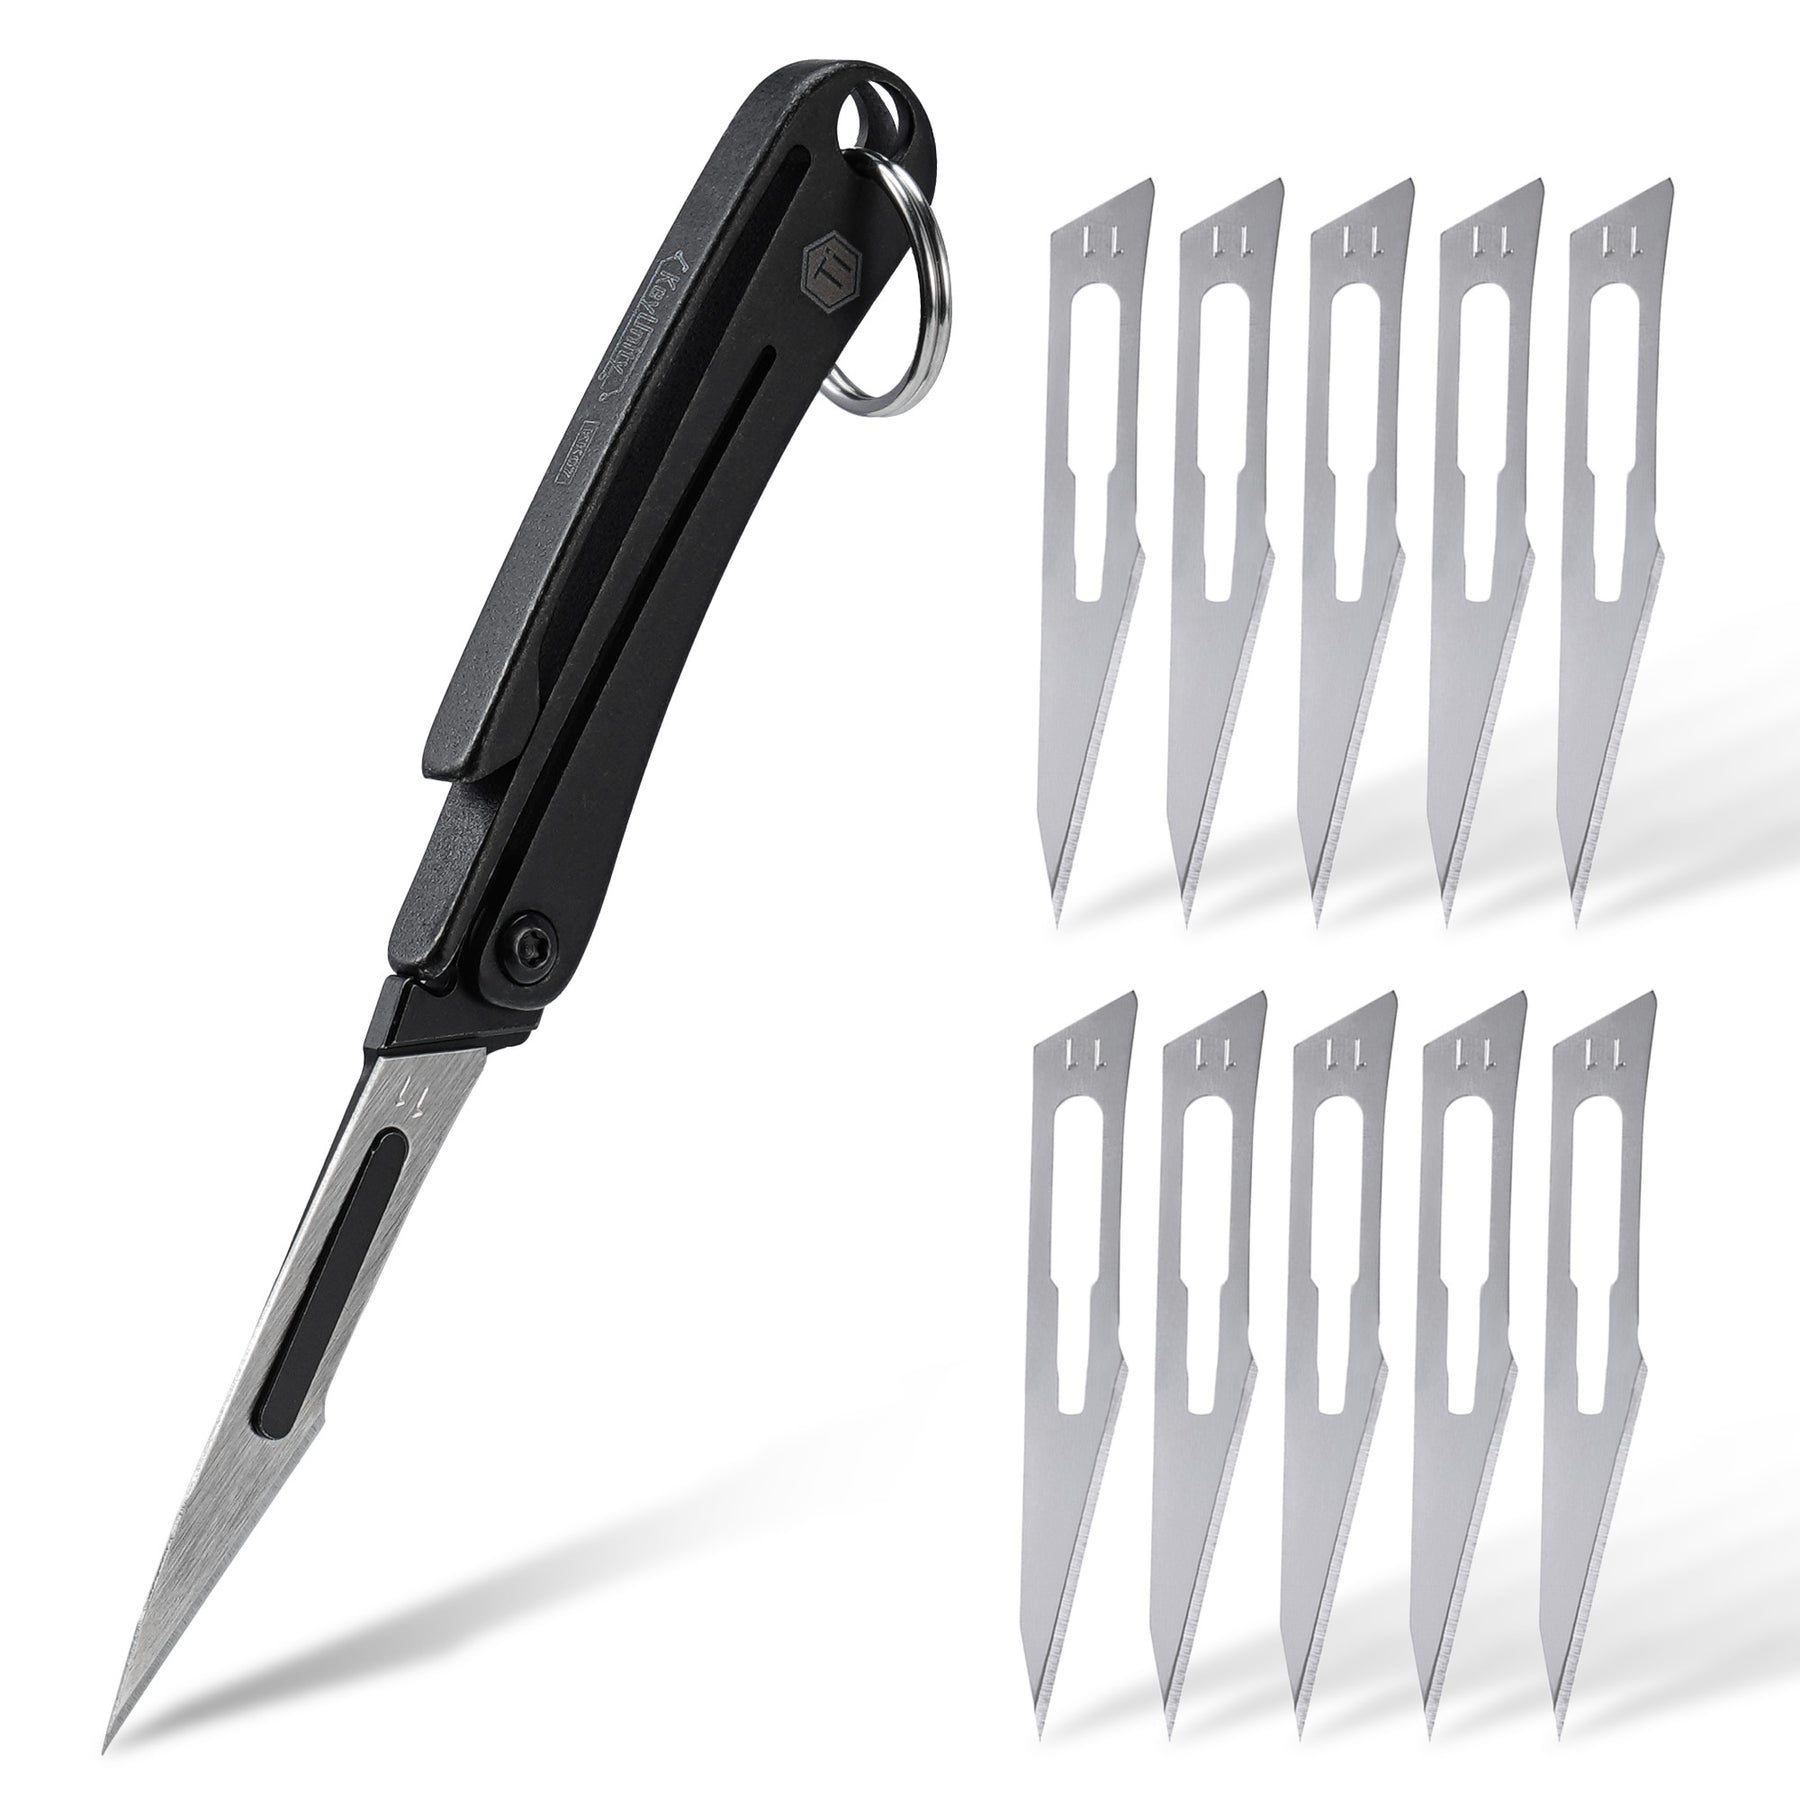 KK07 Mini Folding Knife